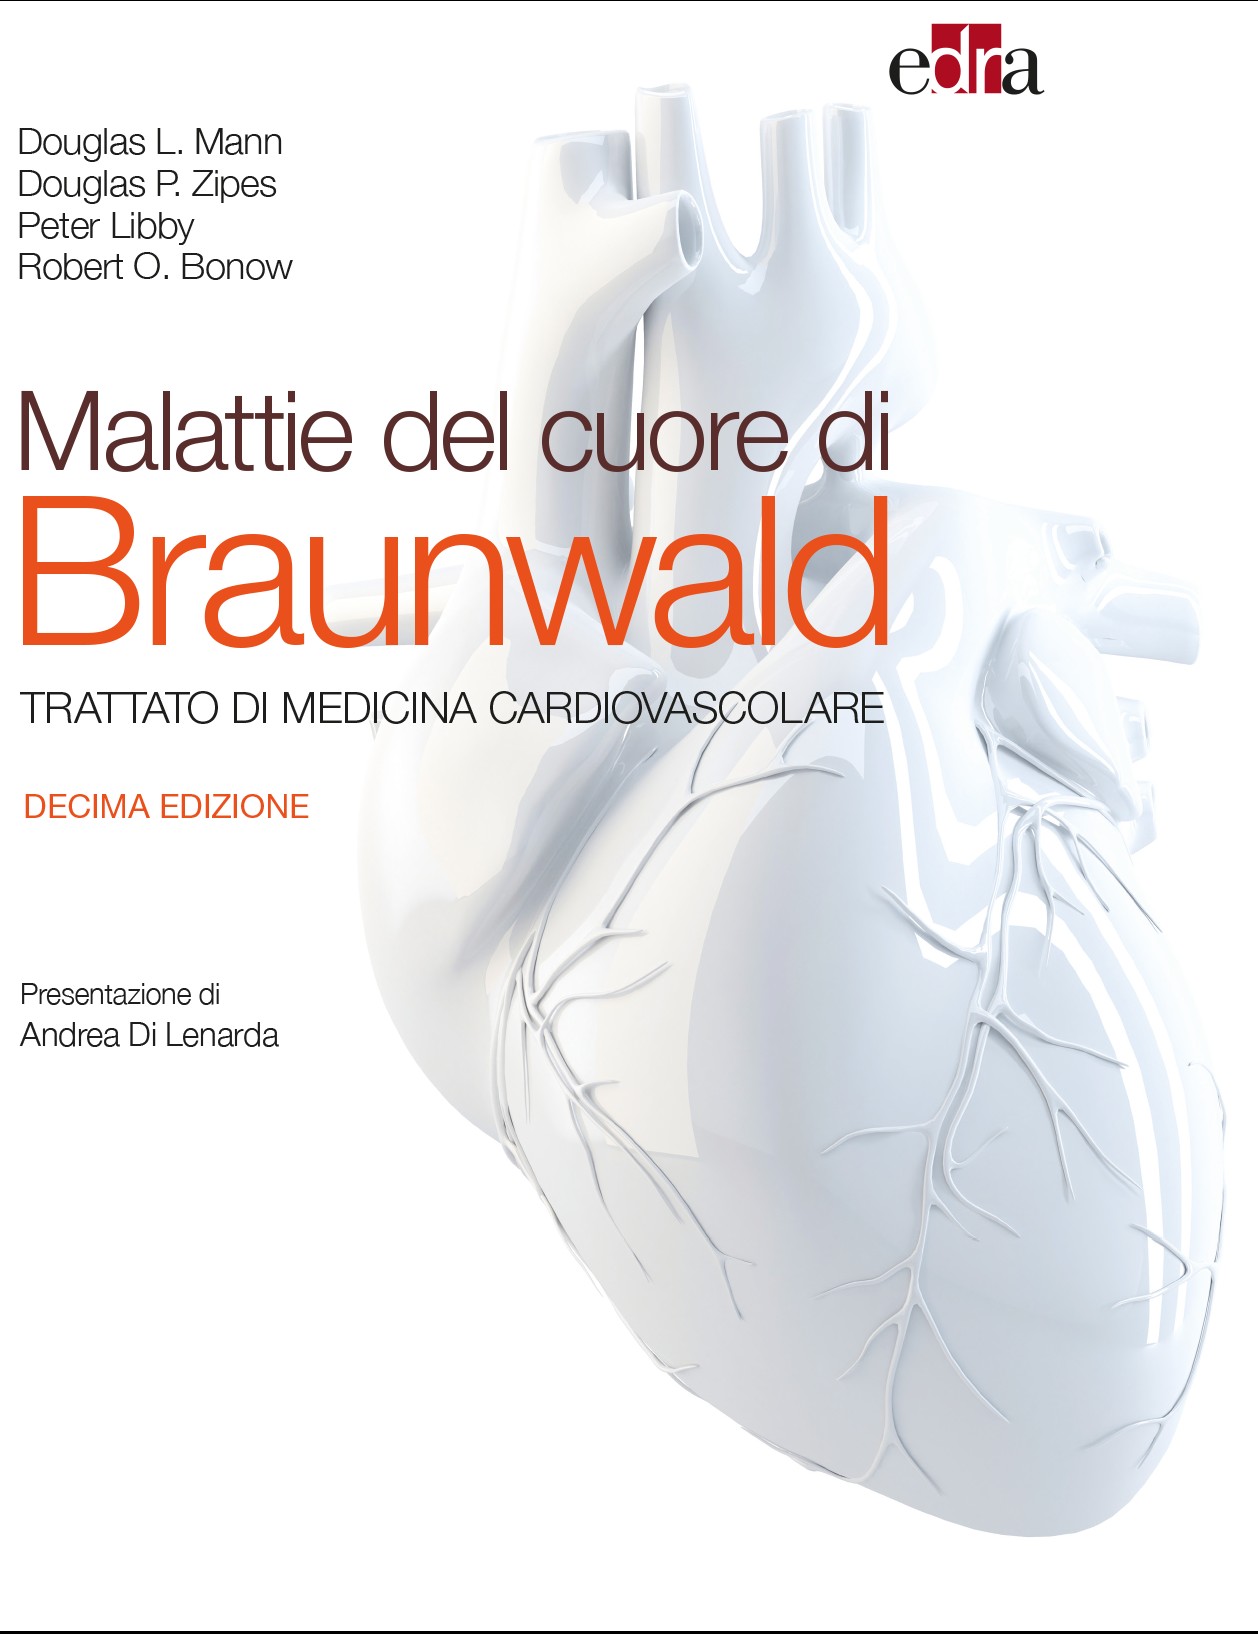 Malattie del cuore di Braunwald X ed. - Librerie.coop